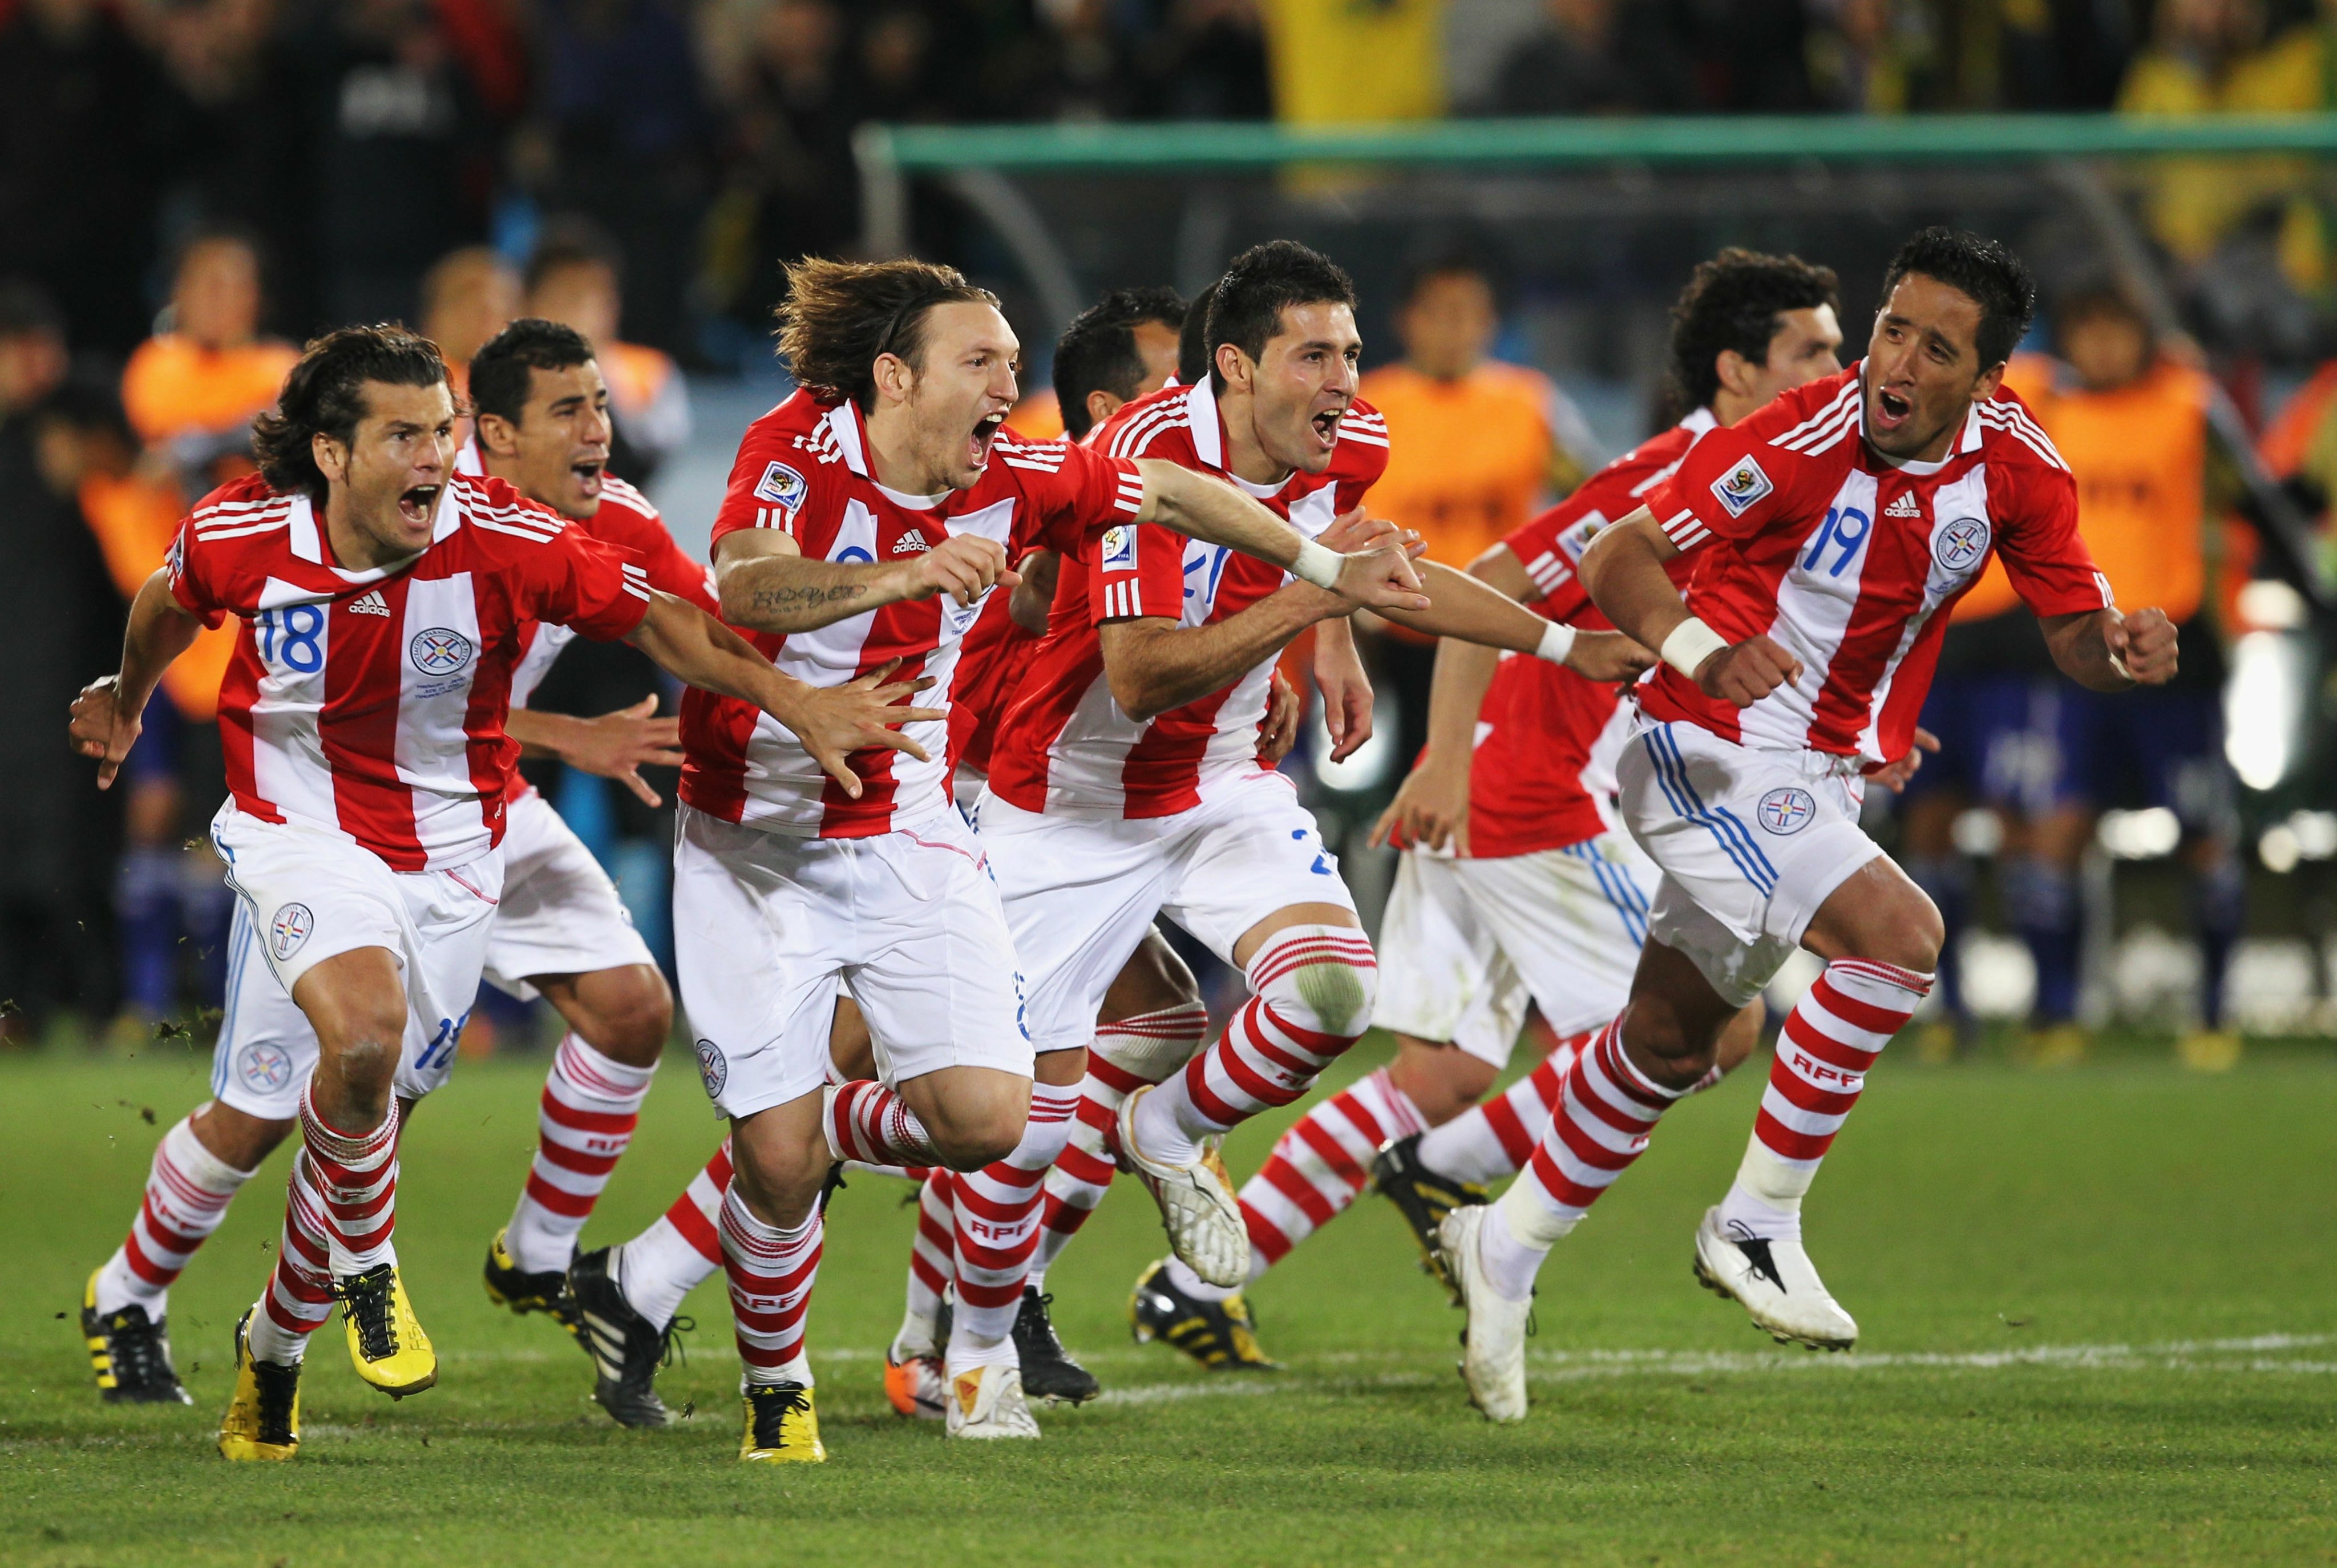 Los albirrojos festejaron por primera vez su pase a Cuartos de Final en el Mundial de Sudáfrica 2010. Foto: Getty Images